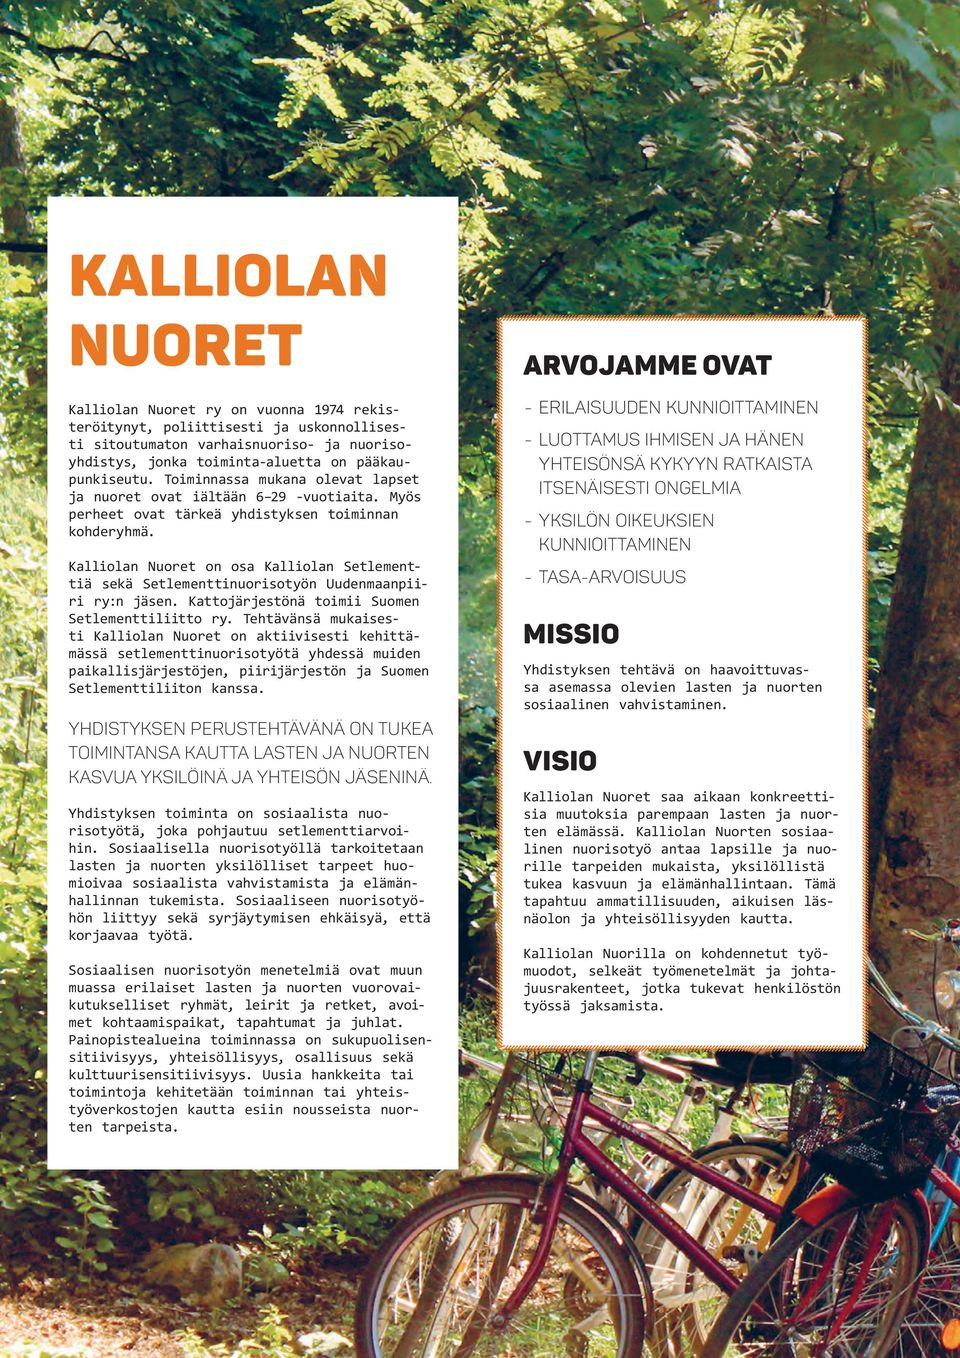 Kalliolan Nuoret on osa Kalliolan Setlementtiä sekä Setlementtinuorisotyön Uudenmaanpiiri ry:n jäsen. Kattojärjestönä toimii Suomen Setlementtiliitto ry.